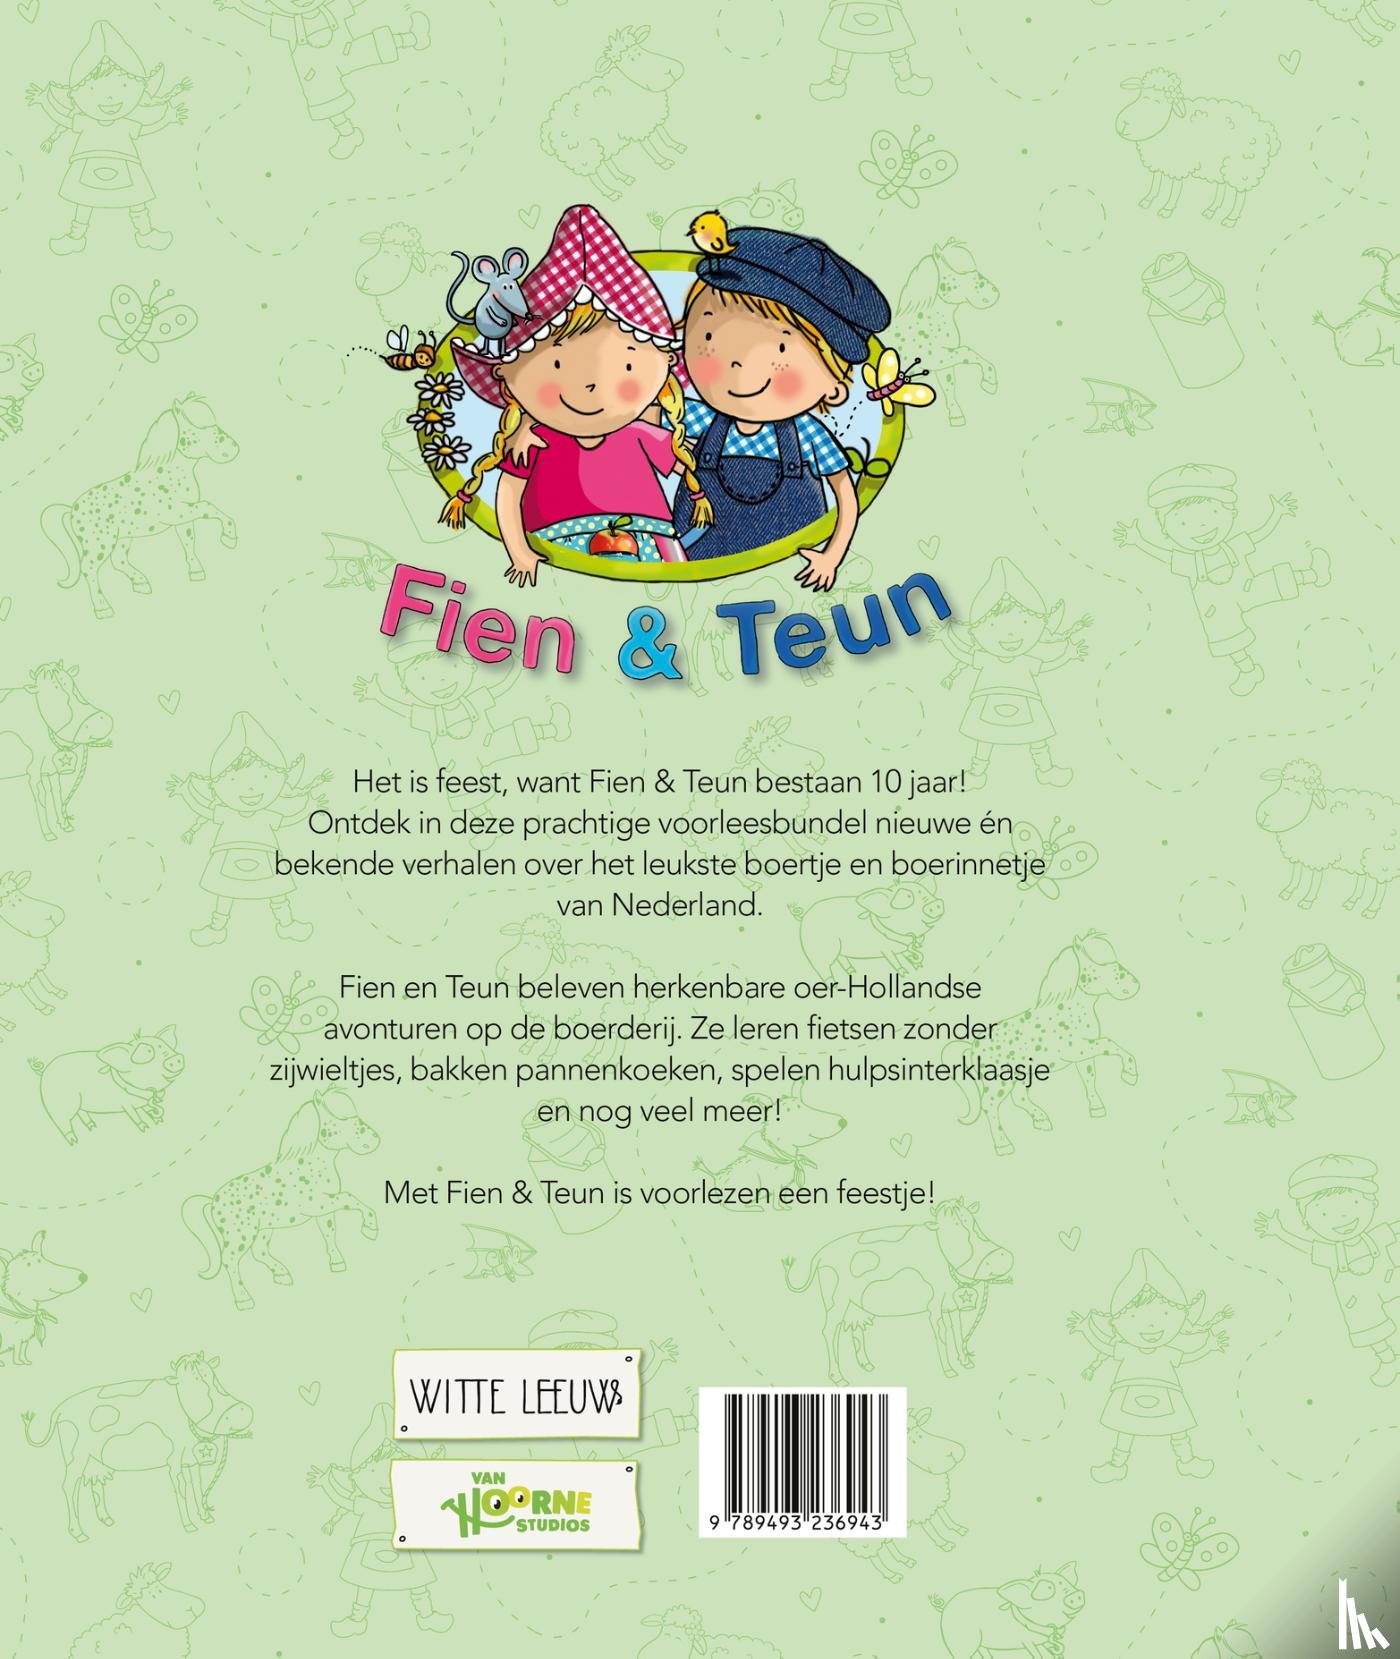 Van Hoorne - Het grote voorleesboek van Fien & Teun